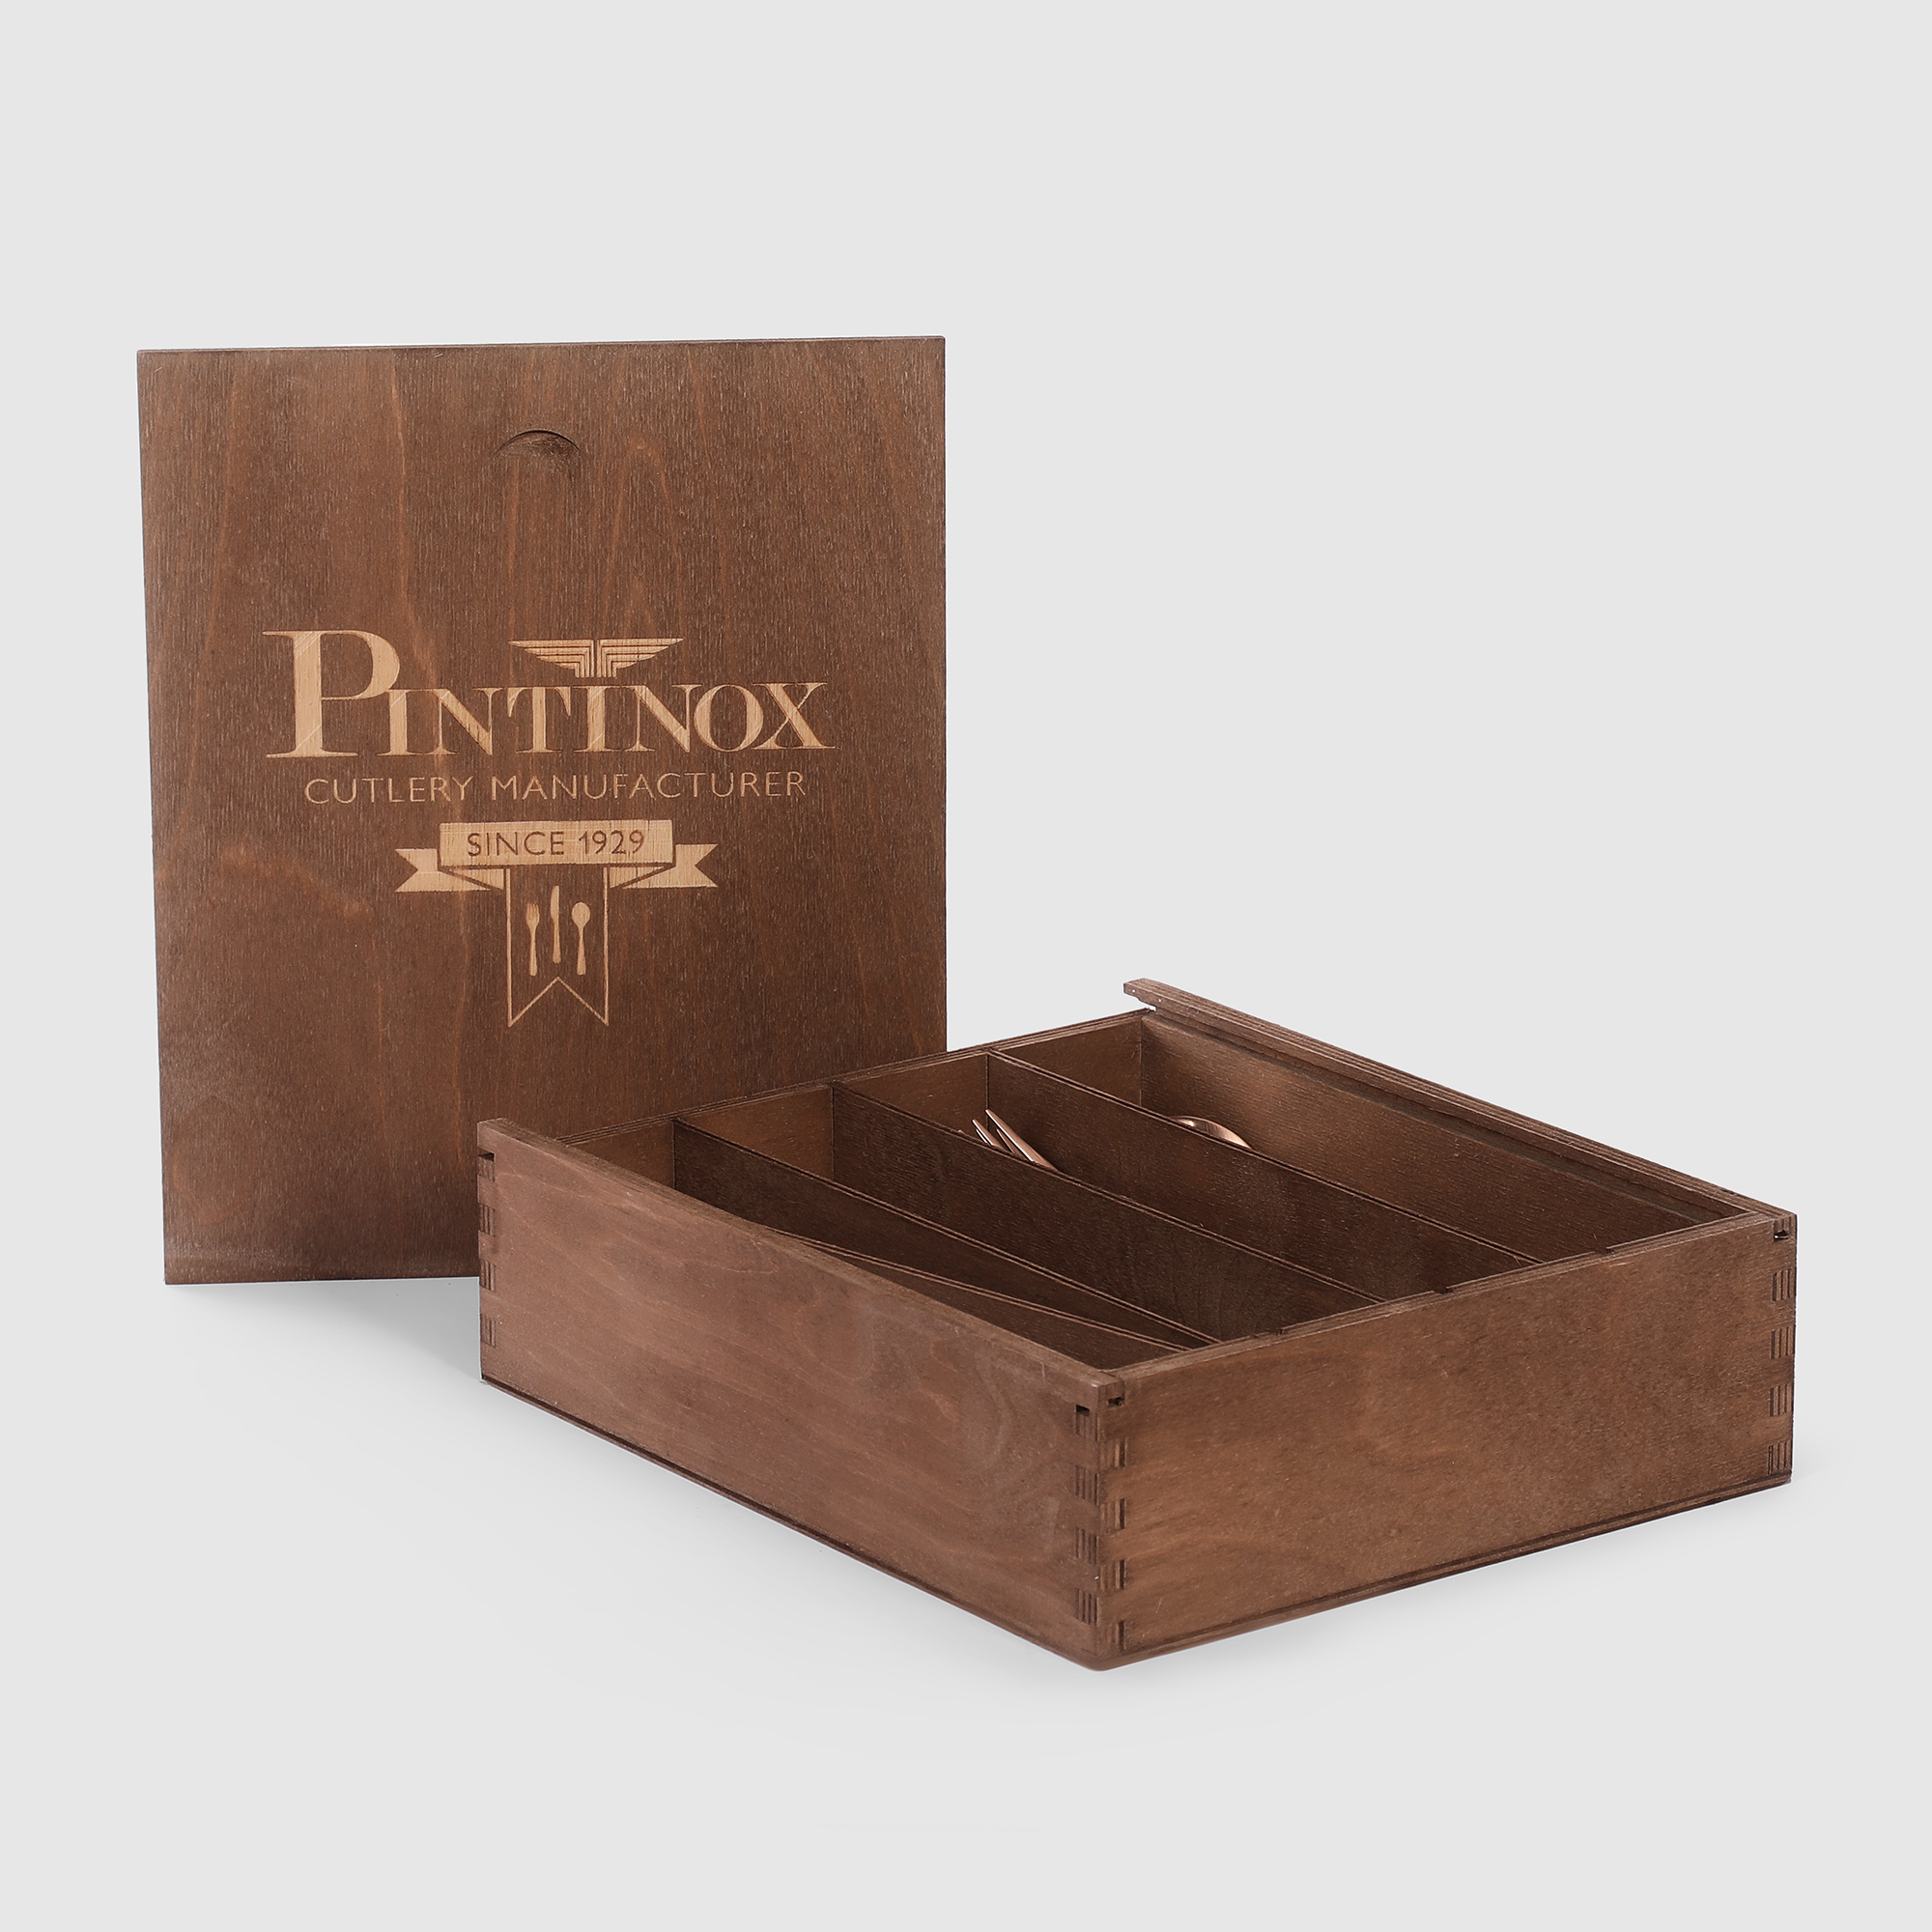 Набор столовых приборов Pintinox Satin cop 24 предмета 6 персон, цвет бронзовый - фото 12